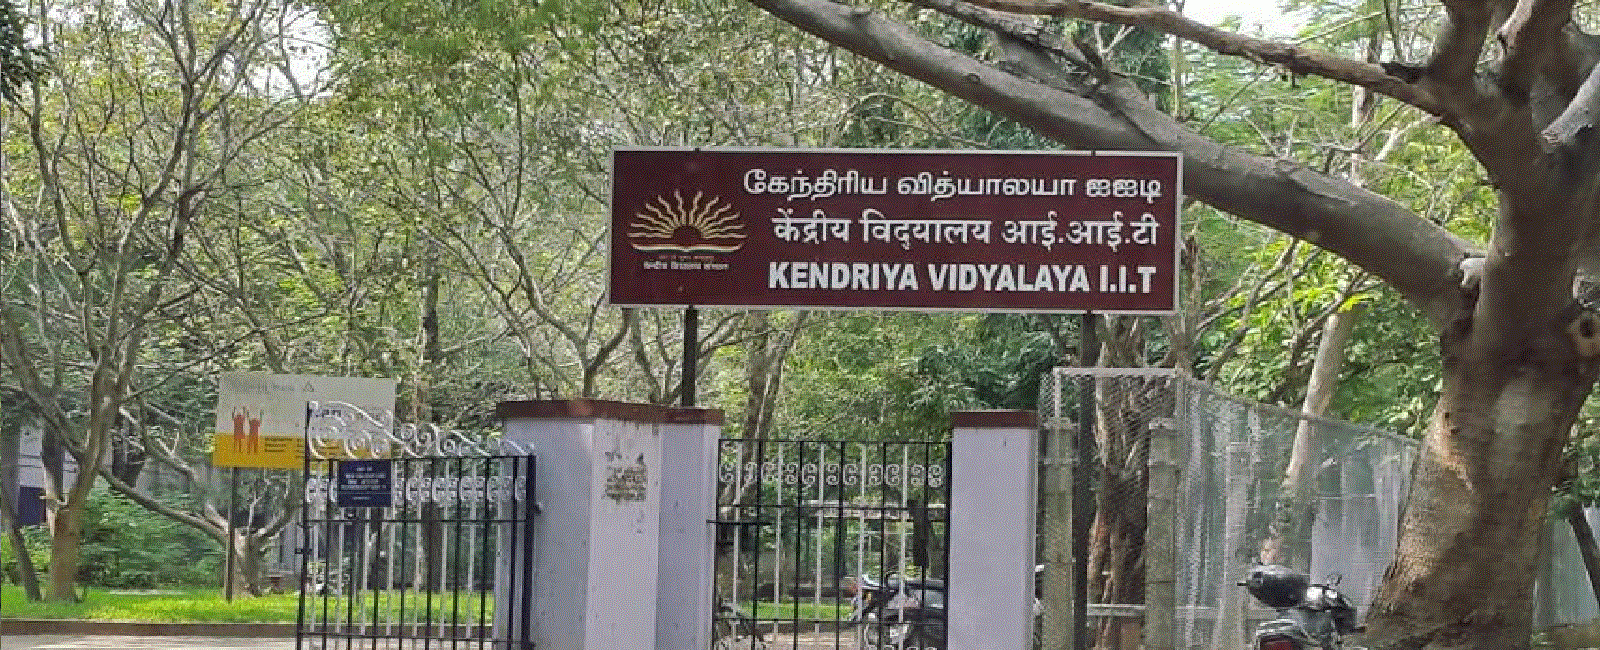 KV IIT, Kendriya Vidyalaya IIT Madras, IIT Chennai